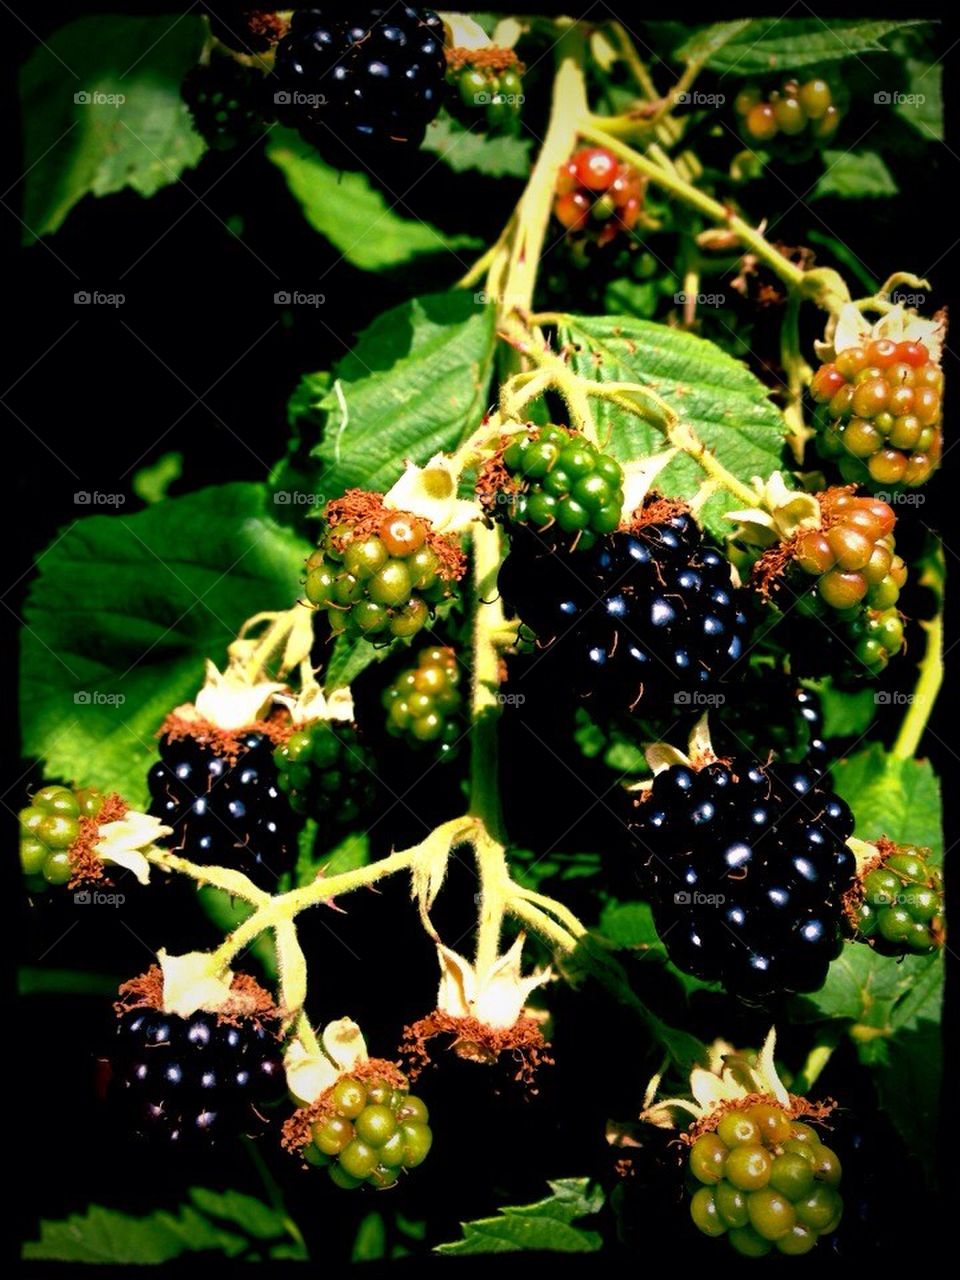 Black Berries in Summer